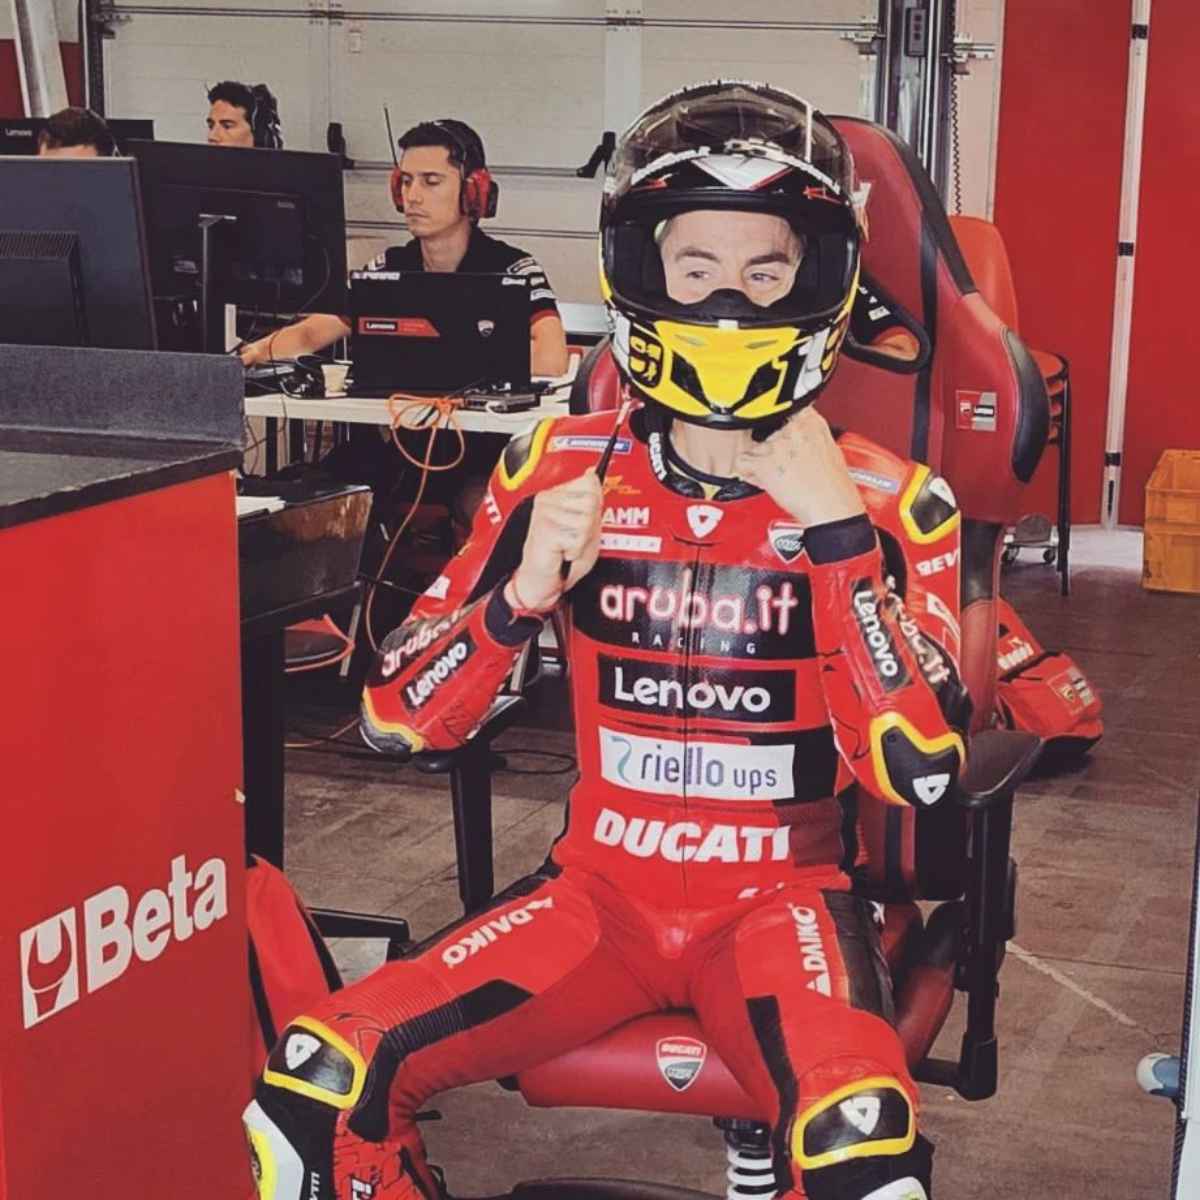 Superbike, Bautista: další test s Ducati MotoGP v Misanu